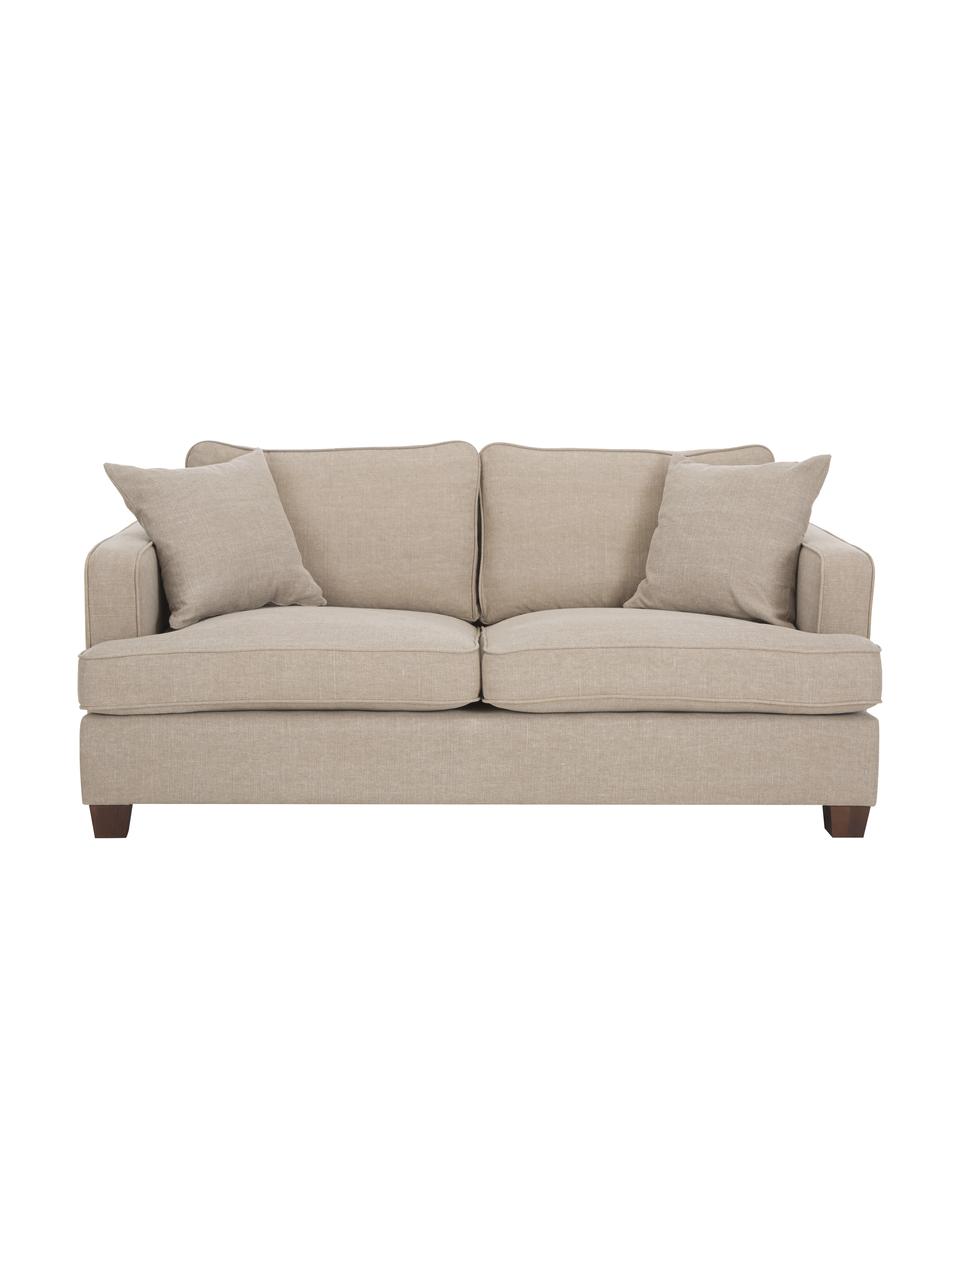 Big Sofa Warren (2-Sitzer) in Beige mit Leinenstoffgemisch, Gestell: Holz, Bezug: 60% Baumwolle, 40% Leinen, Beine: Schwarzholz, Webstoff Beige, 178 x 85 cm